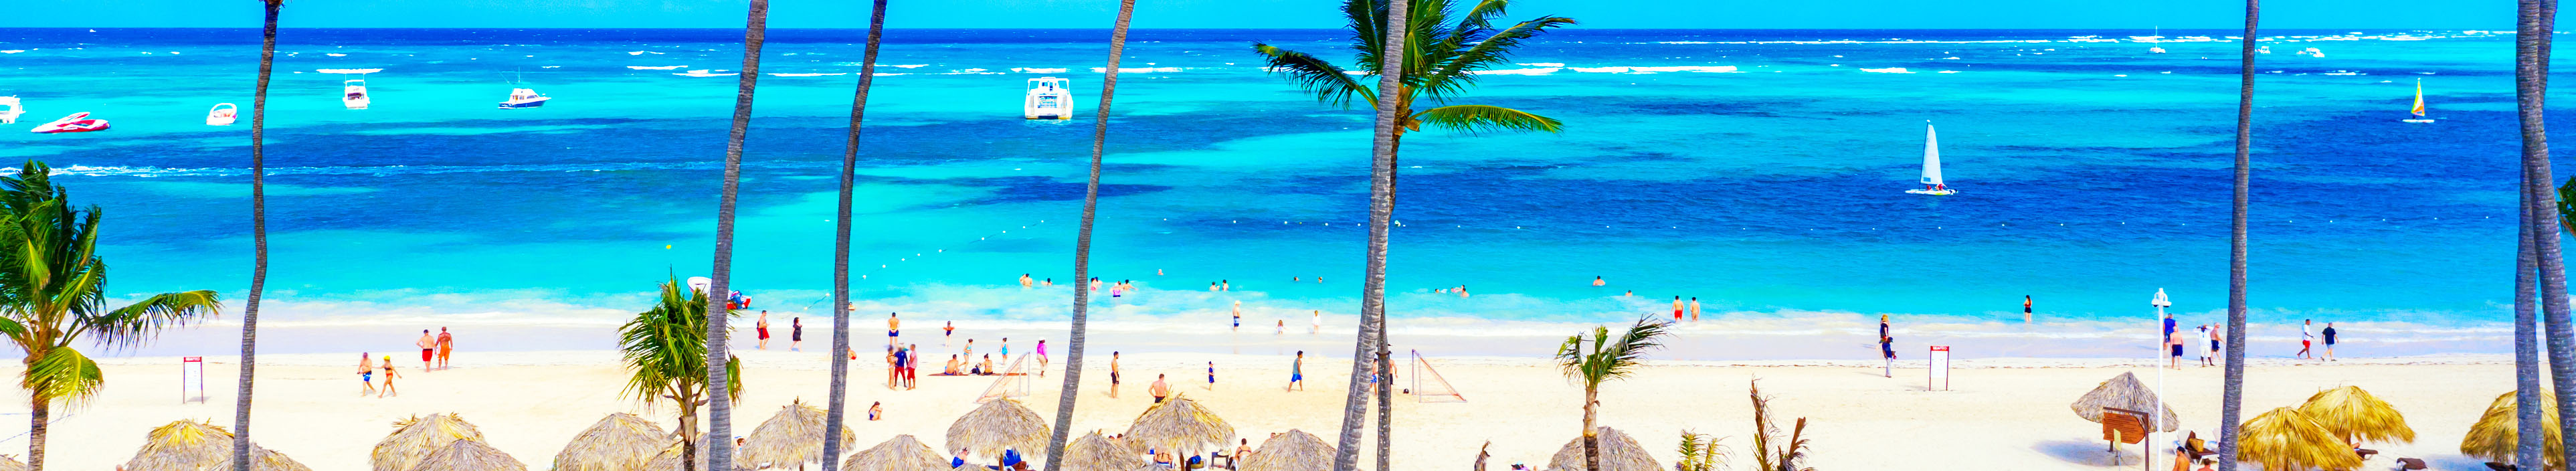 Strand in der Dominikanischen Republik mit weißem Sand, Palmen, blauem Meer und einigen Booten. Touristen schwimmen im Meer oder laufen am Strand.